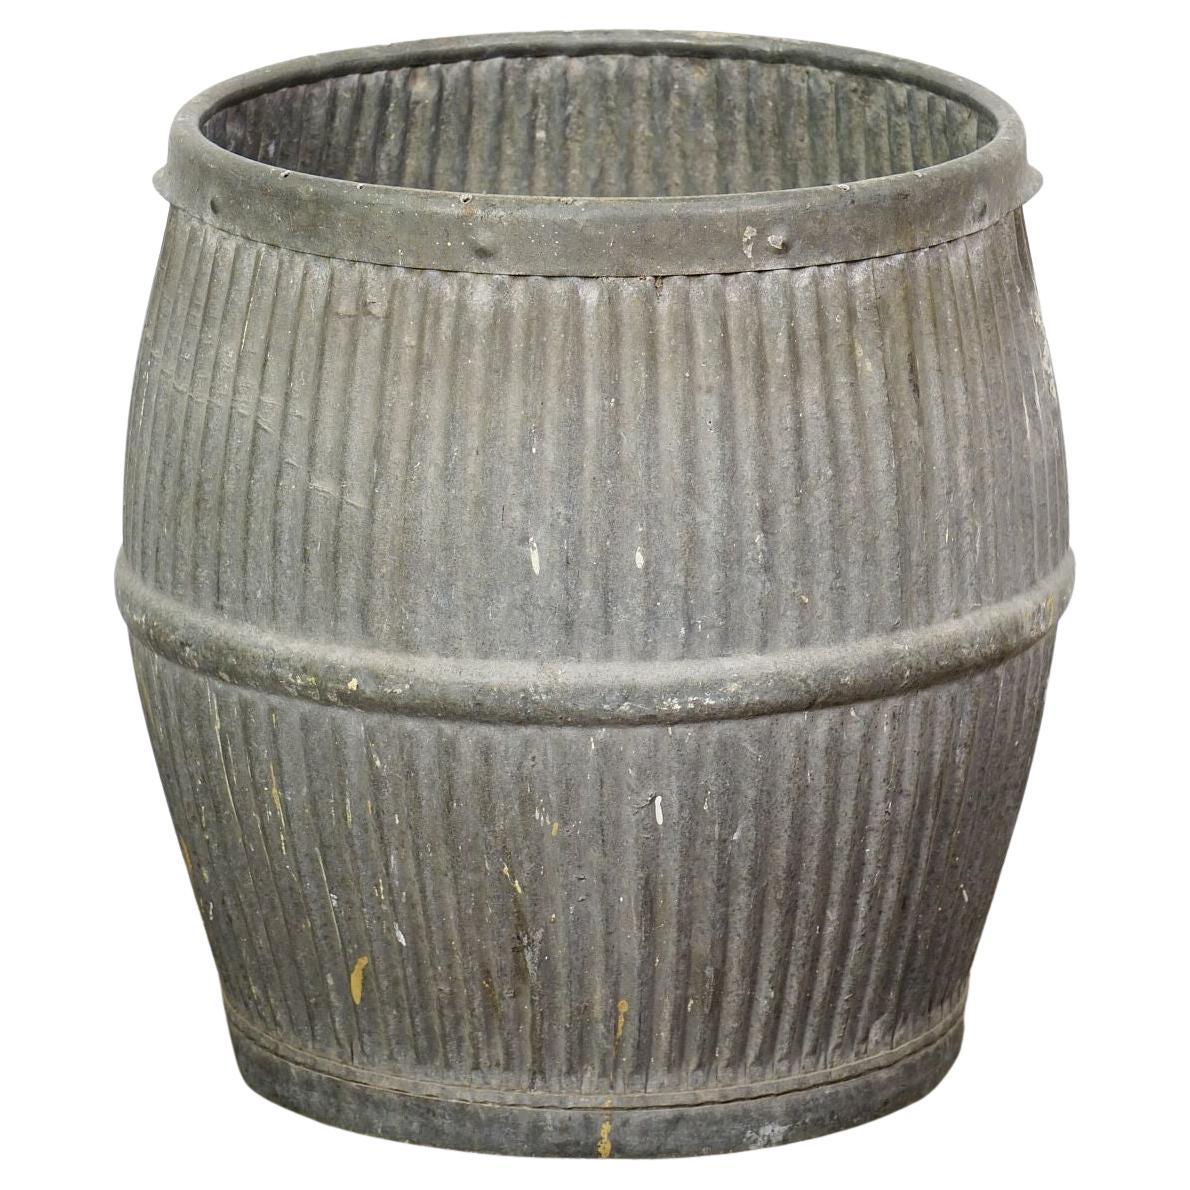 English Garden Pot or Dolly Tub Planter of Zinc